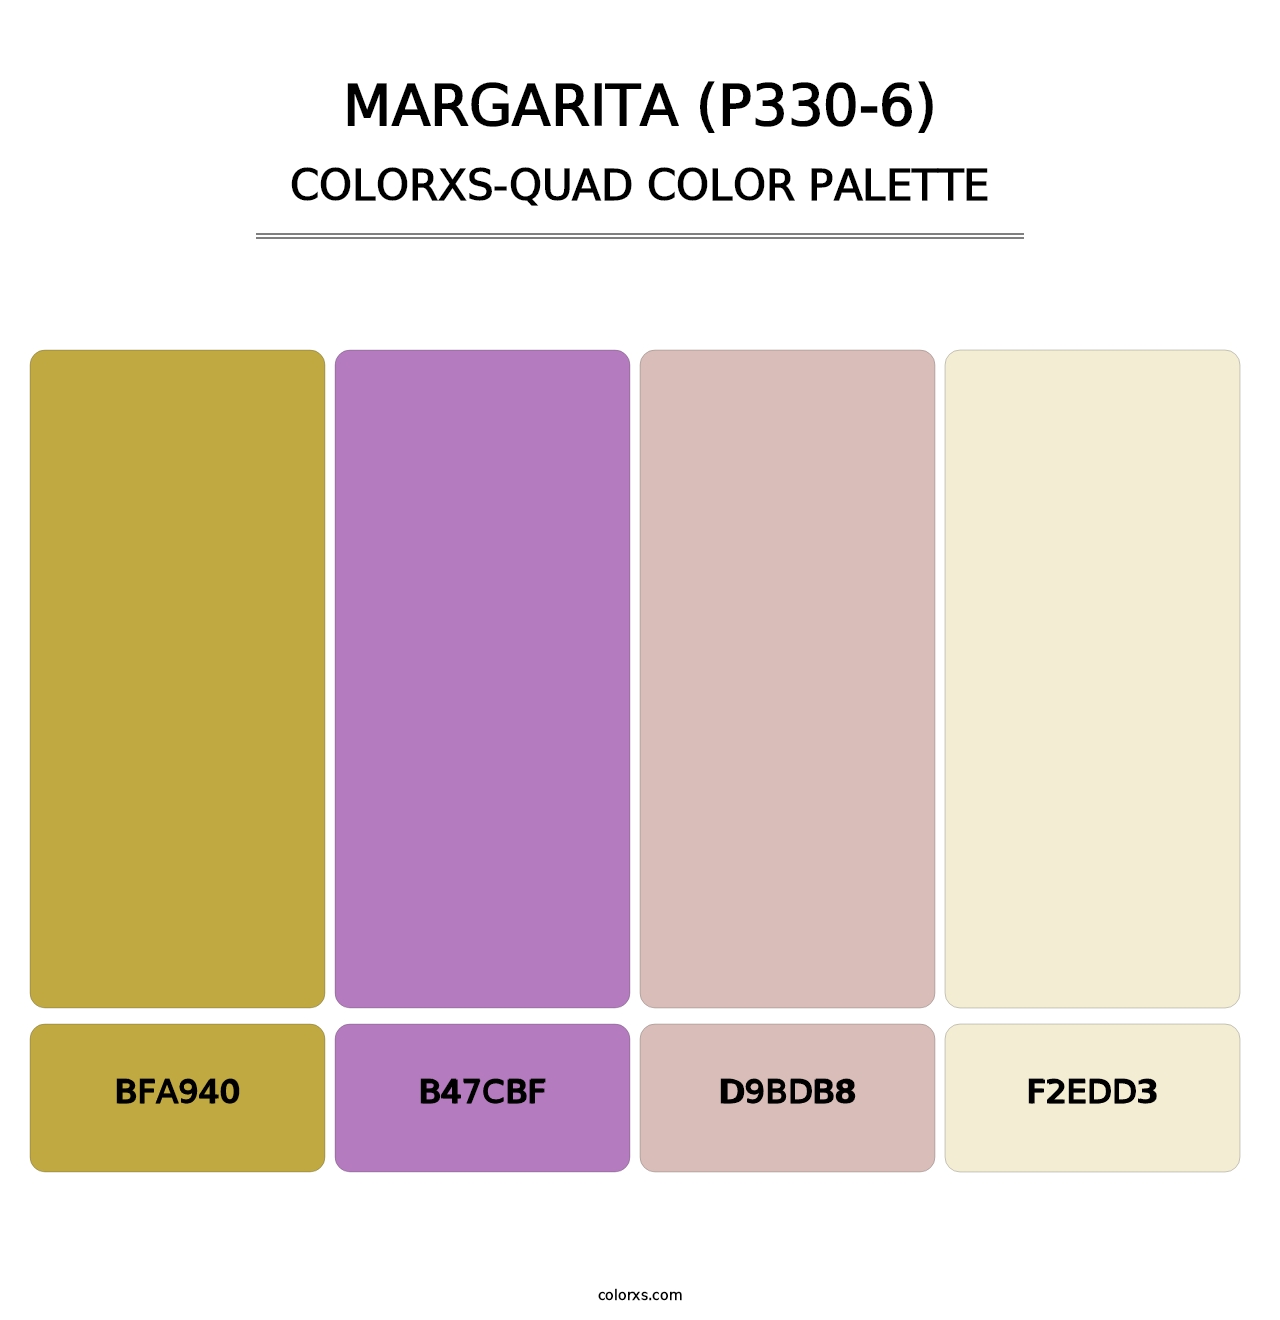 Margarita (P330-6) - Colorxs Quad Palette